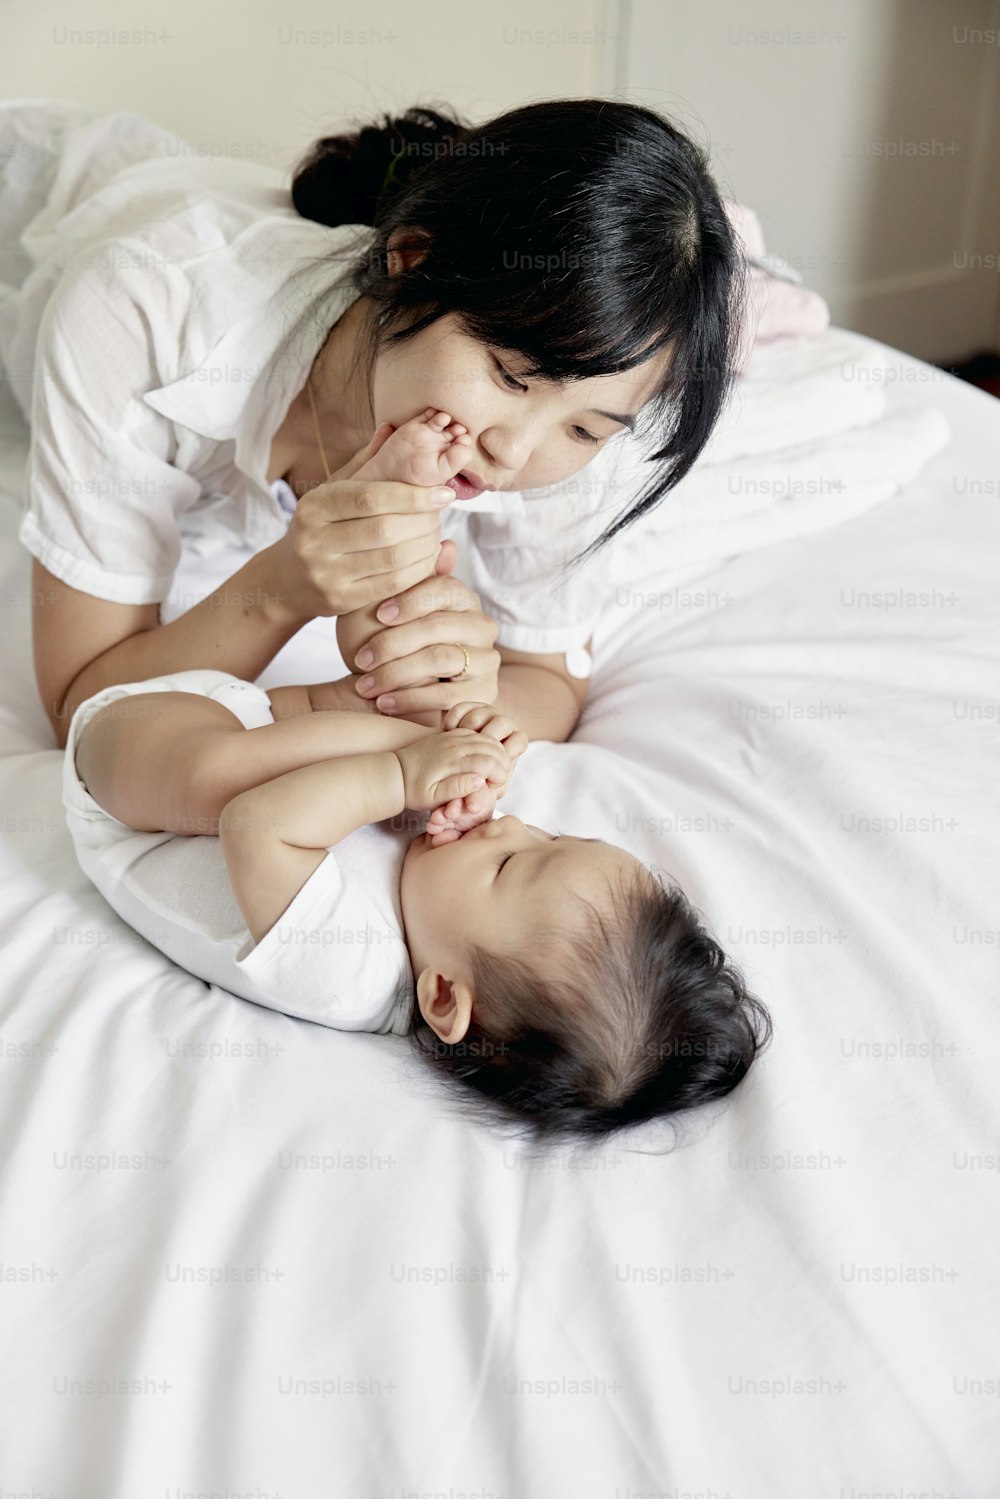 Una mujer acostada encima de una cama junto a un bebé